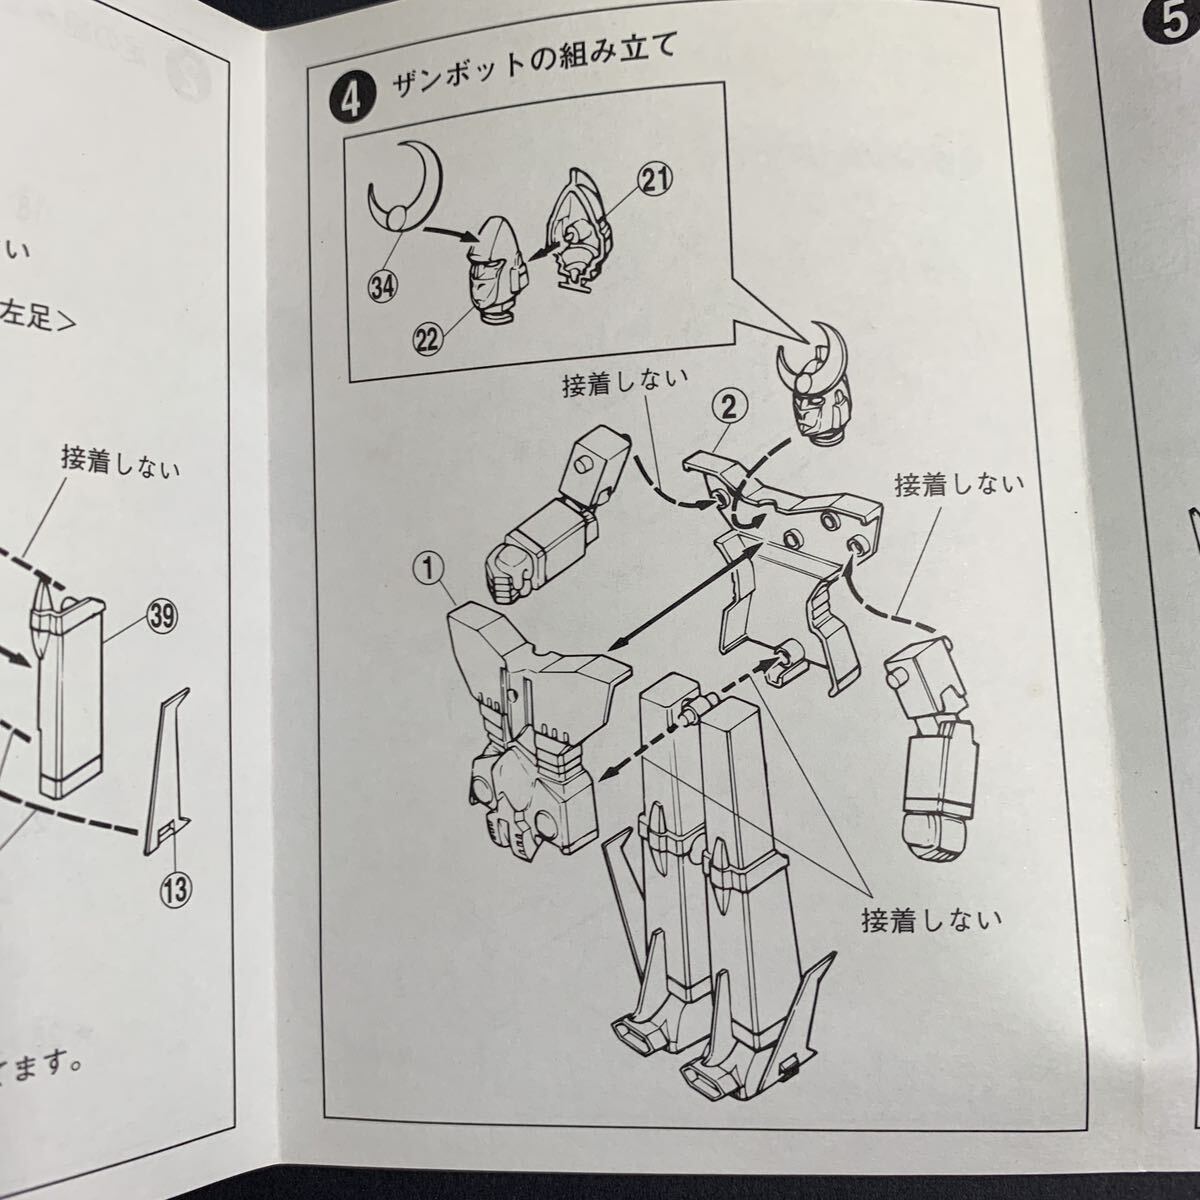 1/460 無敵超人ザンボット3 アオシマ プラモデル 未組立 アクションポーズ可能 絶版品 外箱年代相応の傷み有りの画像8